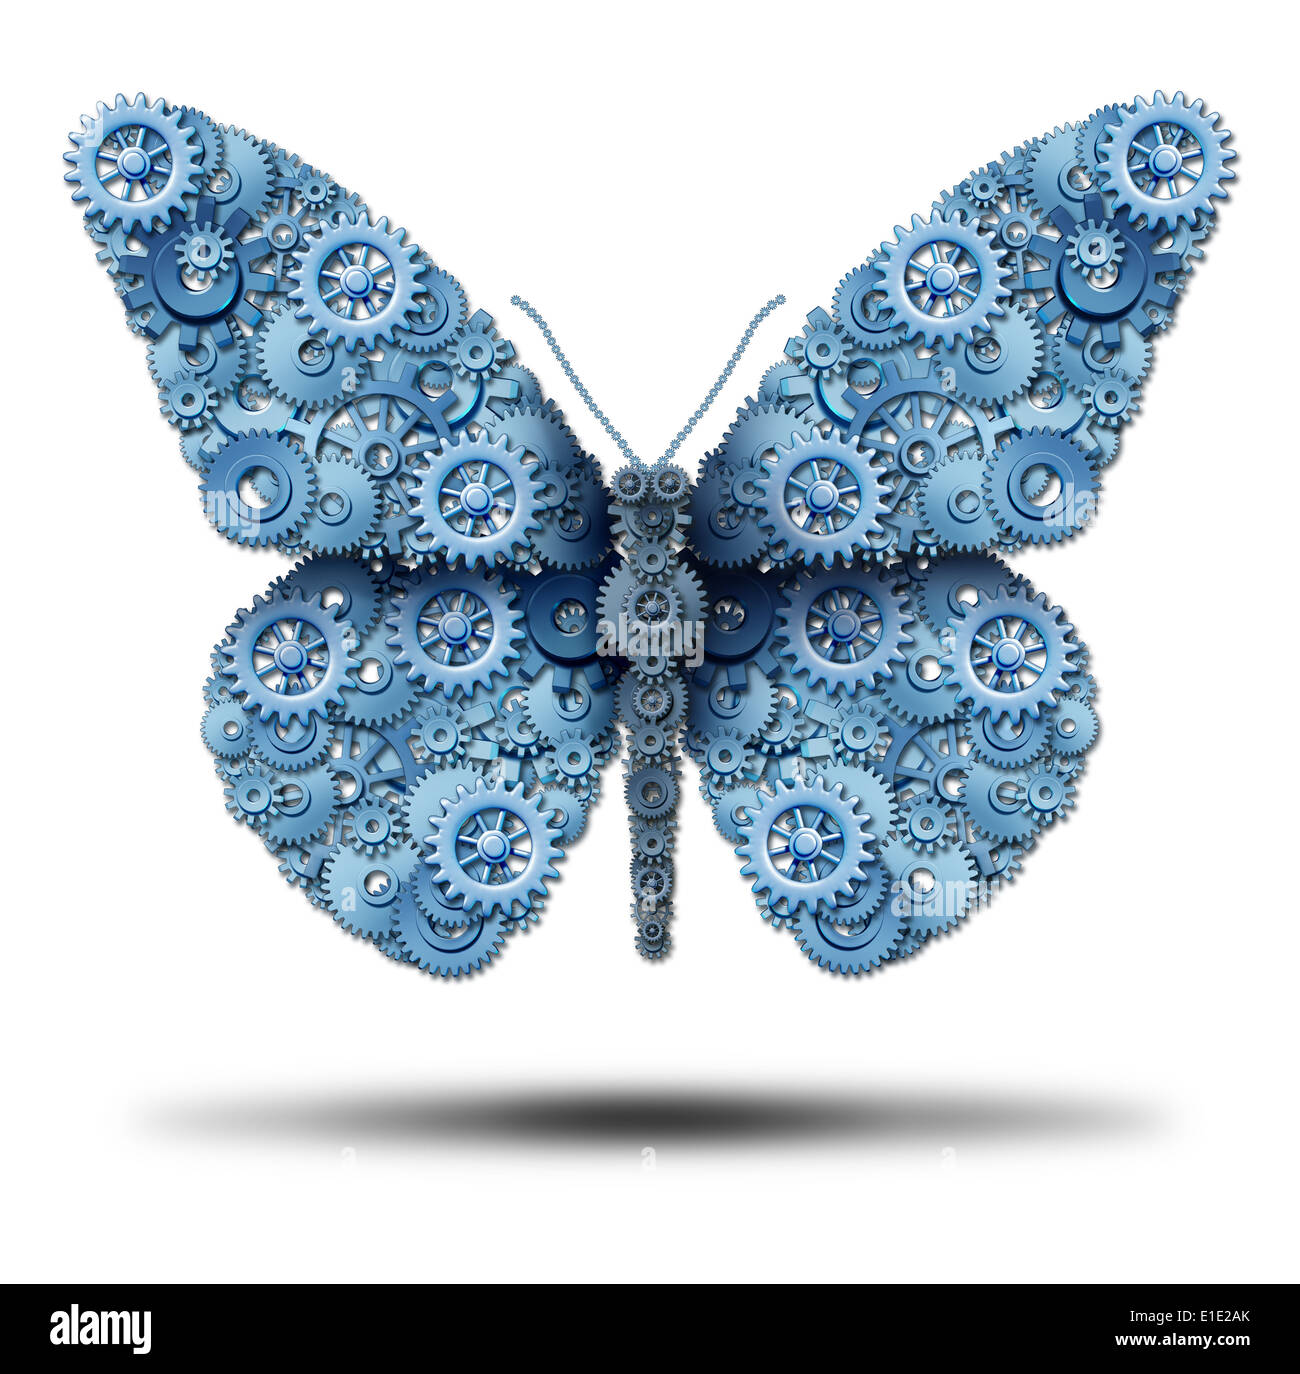 Kreative unternehmerische Freiheit und die Macht der Phantasie-Symbol als eine Gruppe von Getriebe und Zahnräder miteinander verbunden, um eine fliegende Schmetterlingsform als Symbol der Innovation Freiheit auf einem weißen Hintergrund zu bilden. Stockfoto